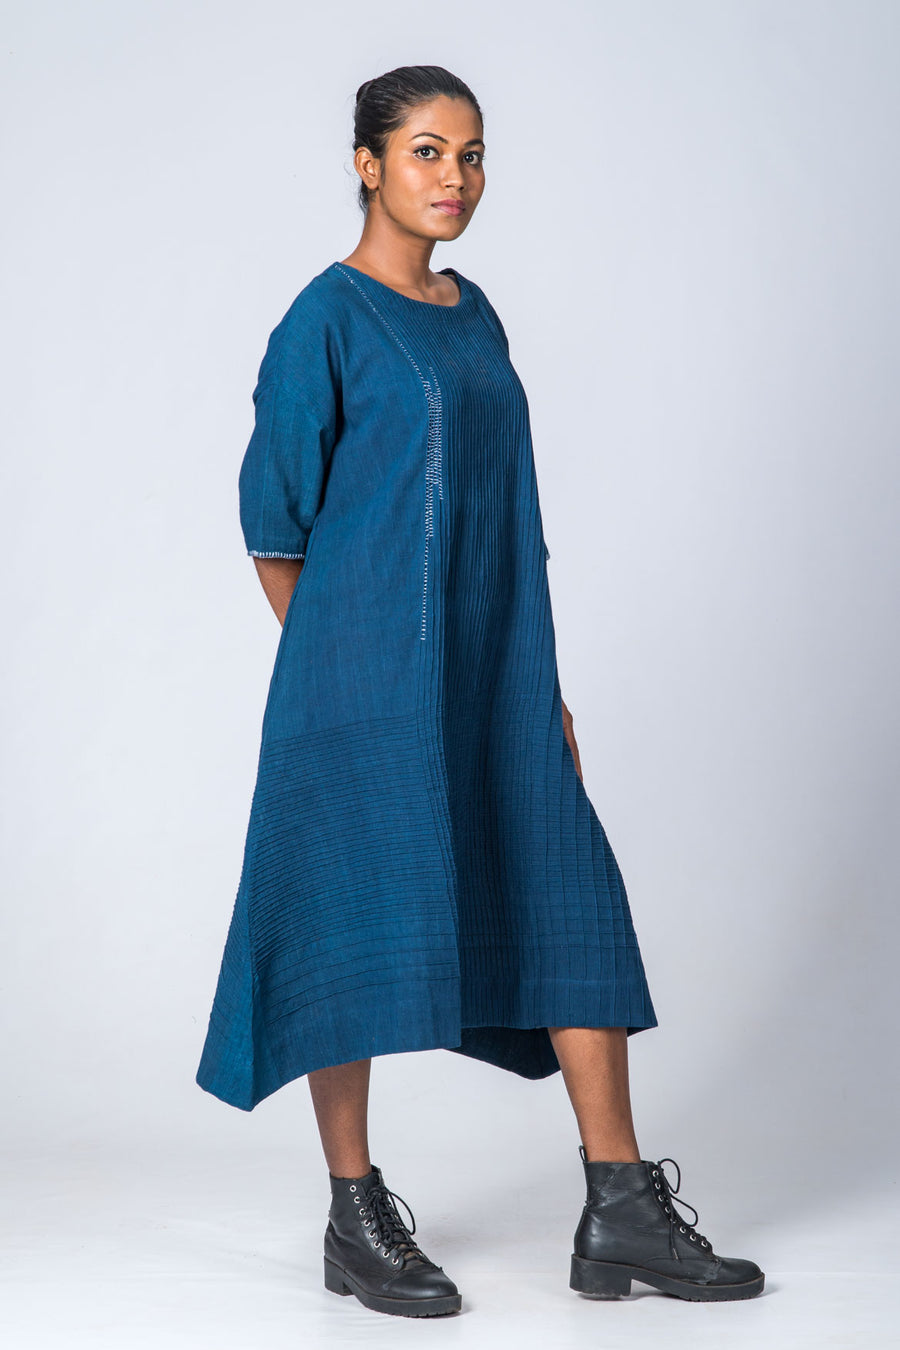 Natural Indigo Cotton Pintuck dress - KARL - Upasana Design Studio